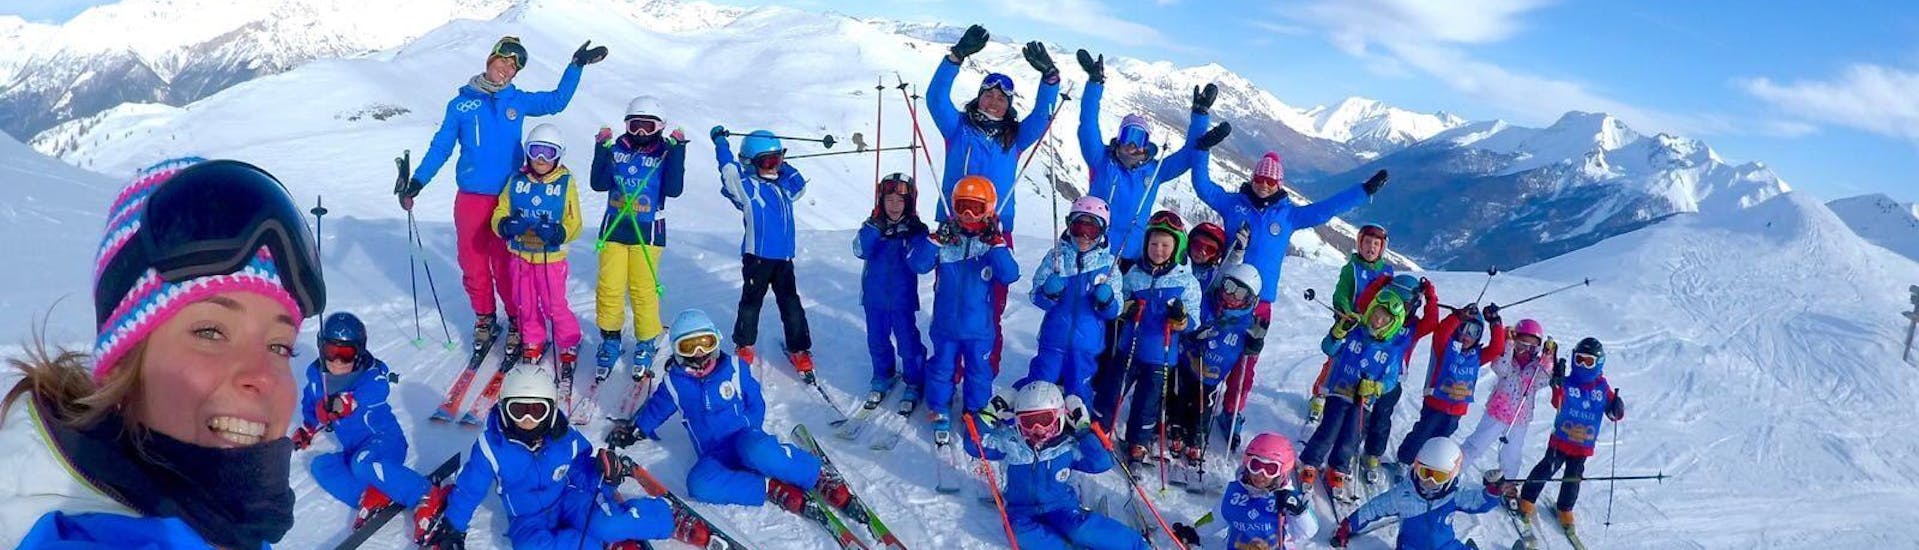 Een groep kinderen en hun ski-instructeurs van de skischool Scuola di Sci Olimpionica poseren voor een foto op de top van de berg in Sestriere. Dit voordat ze beginnen met hun Kinderskilessen (5-12 j.) - Gevorderden